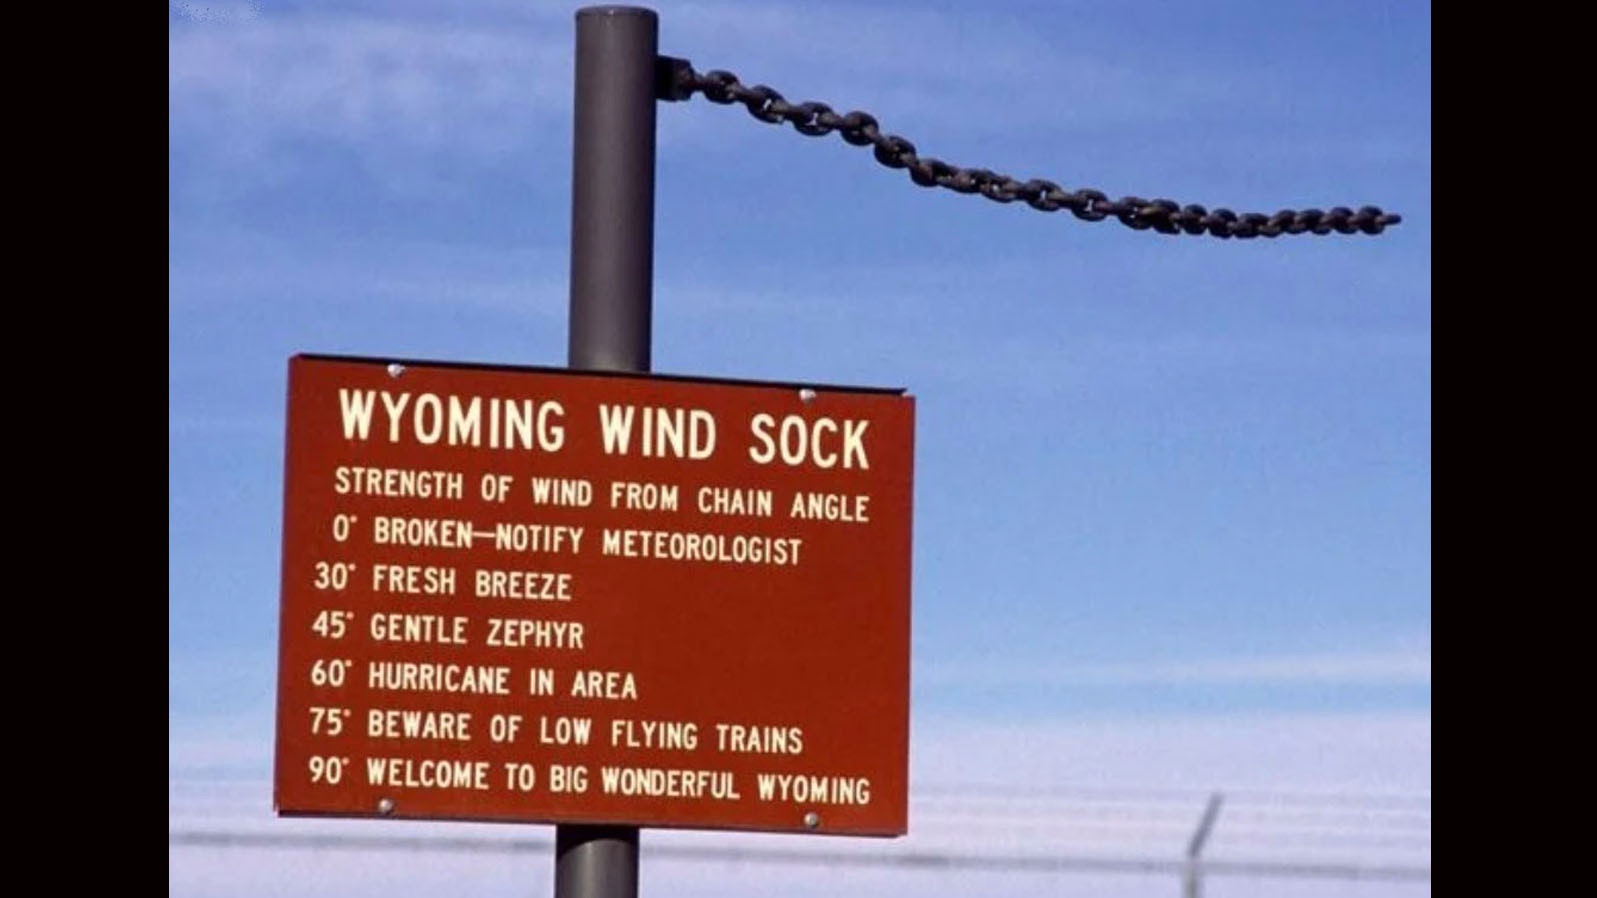 Wyo wind sock